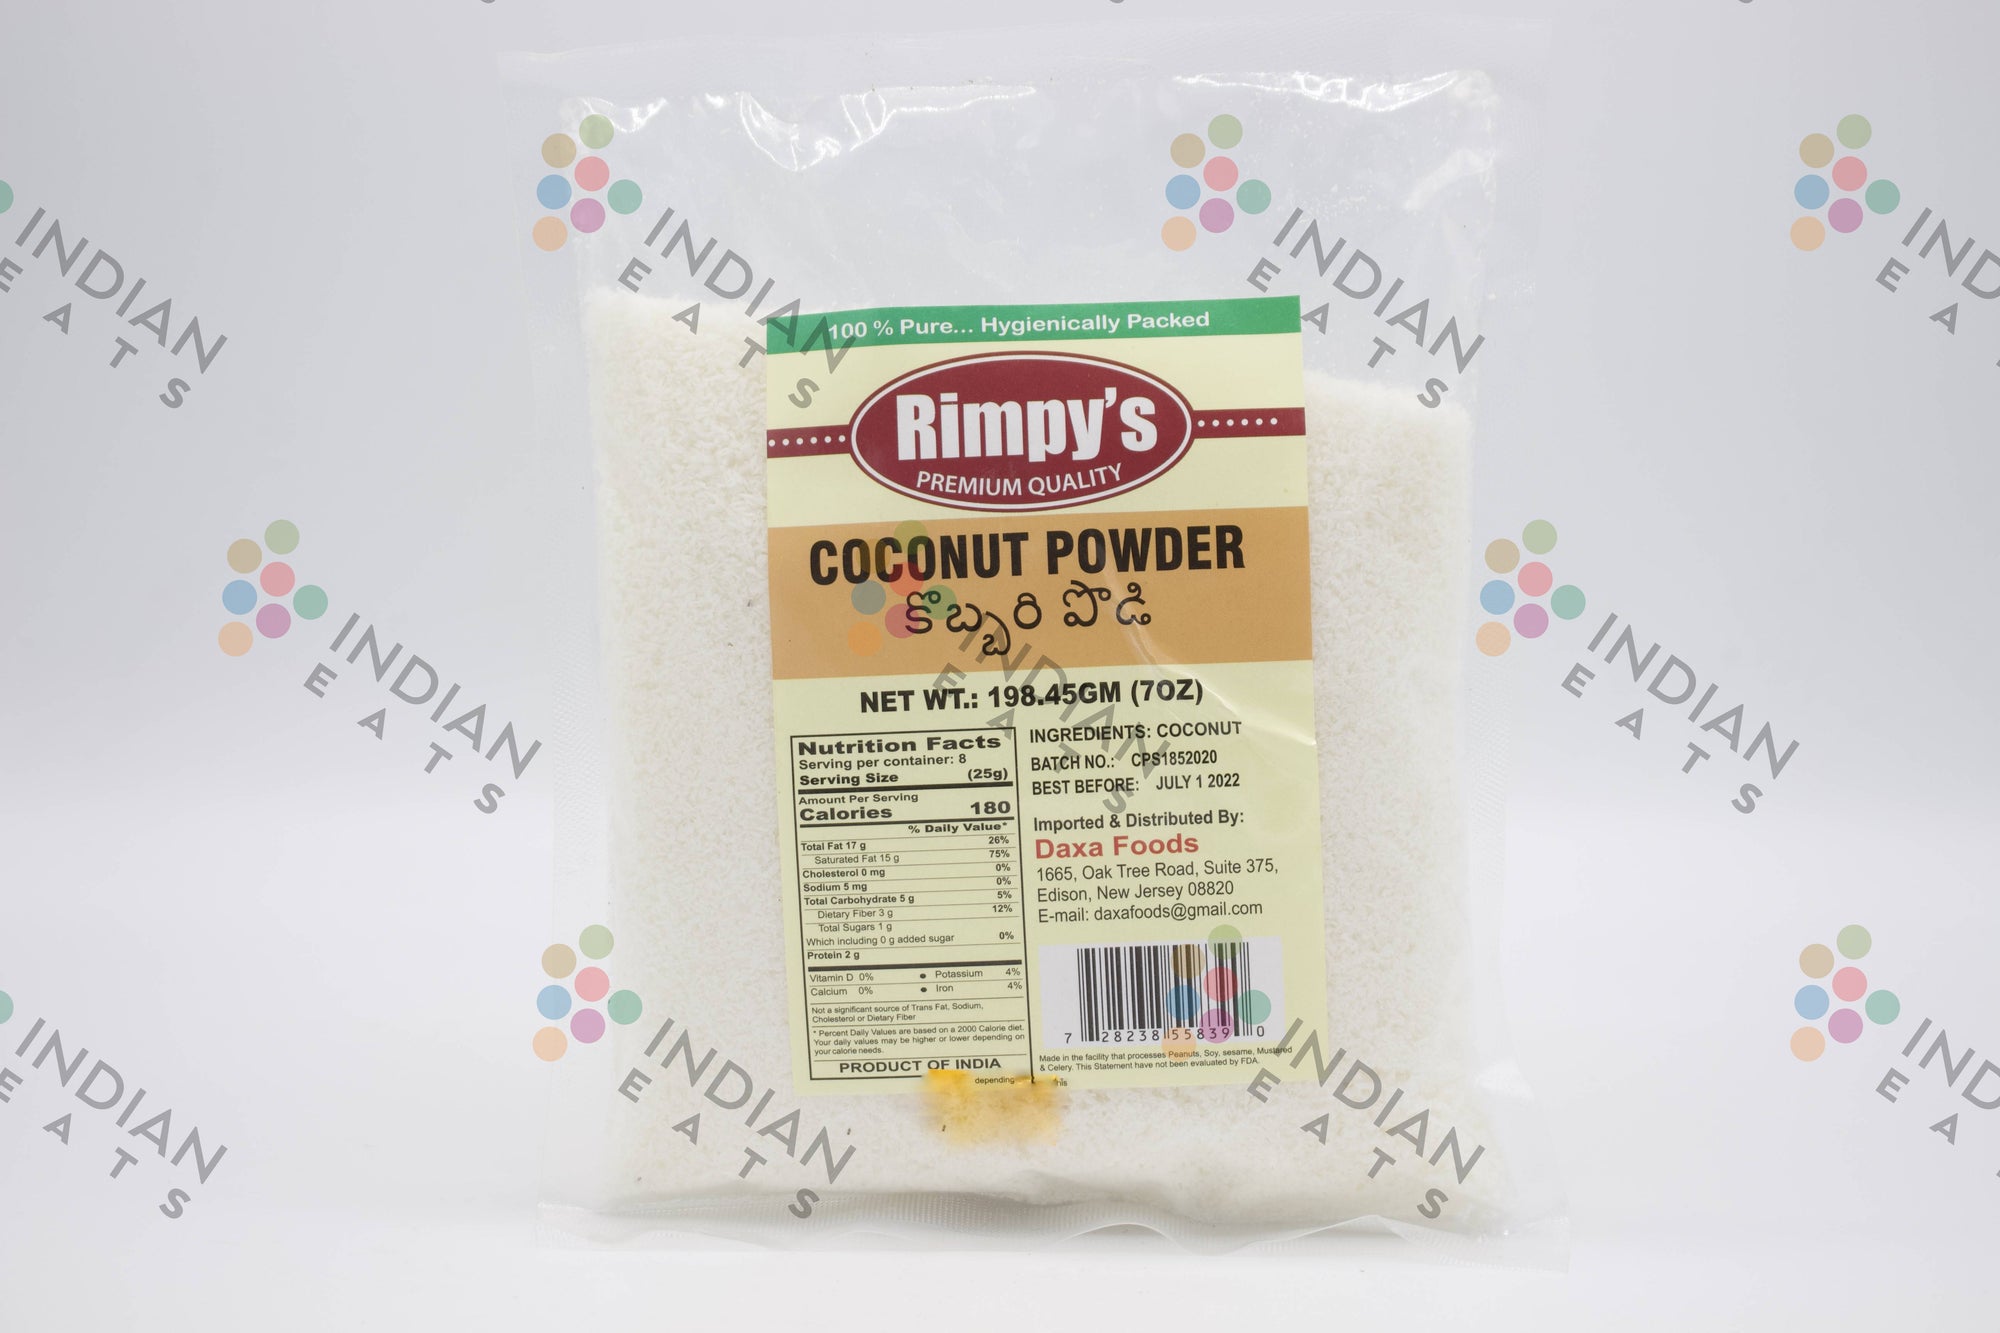 Rimpy's Coconut Powder